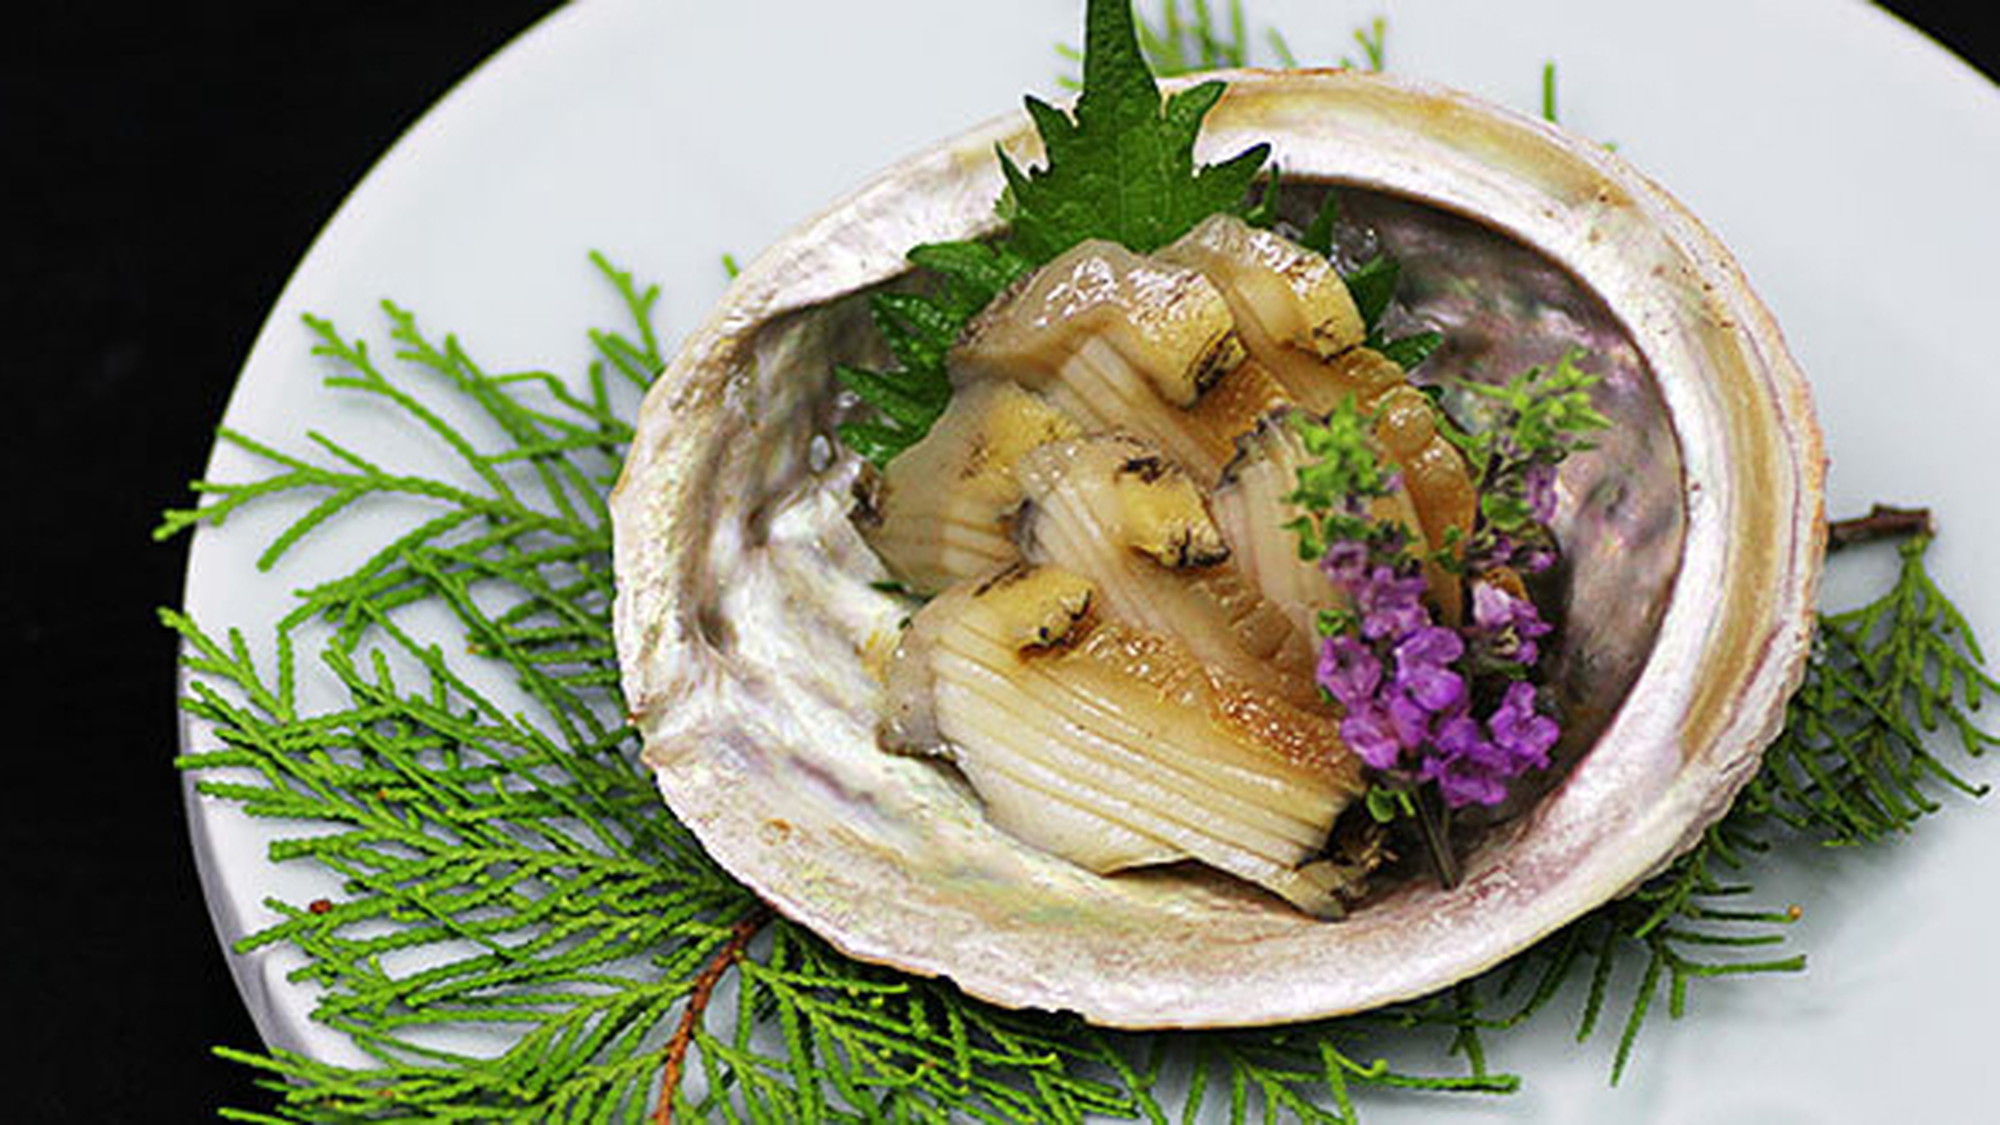 甲州名物「あわびの煮貝」をご賞味ください。※イメージ